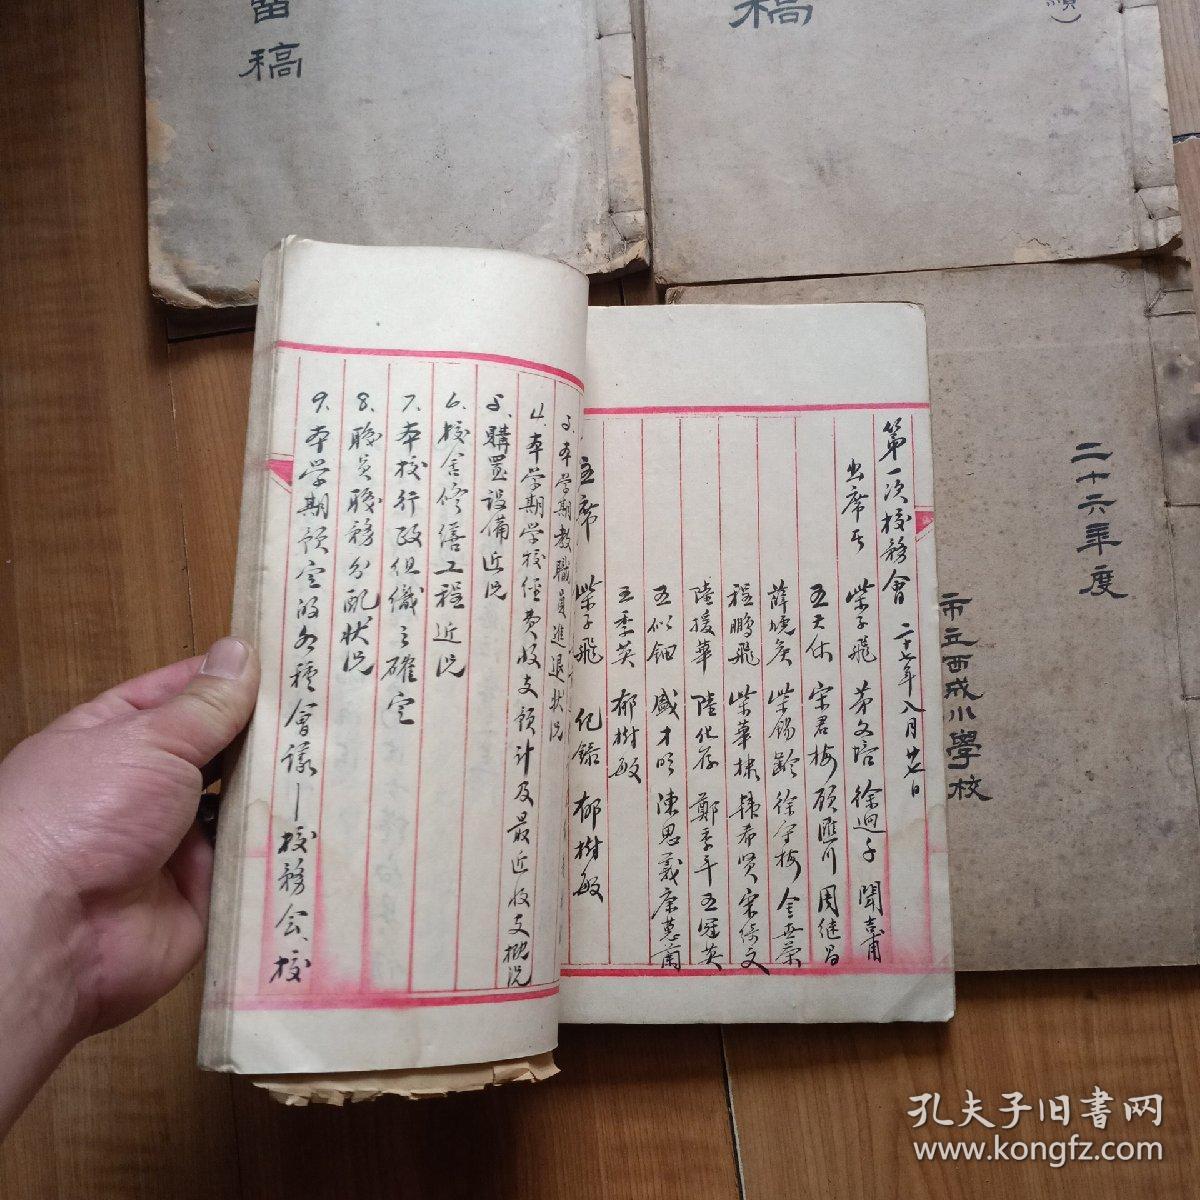 上海市立西城小学 资料从民国24年到1951一共23本线装的详细看图《民国时期的14本》